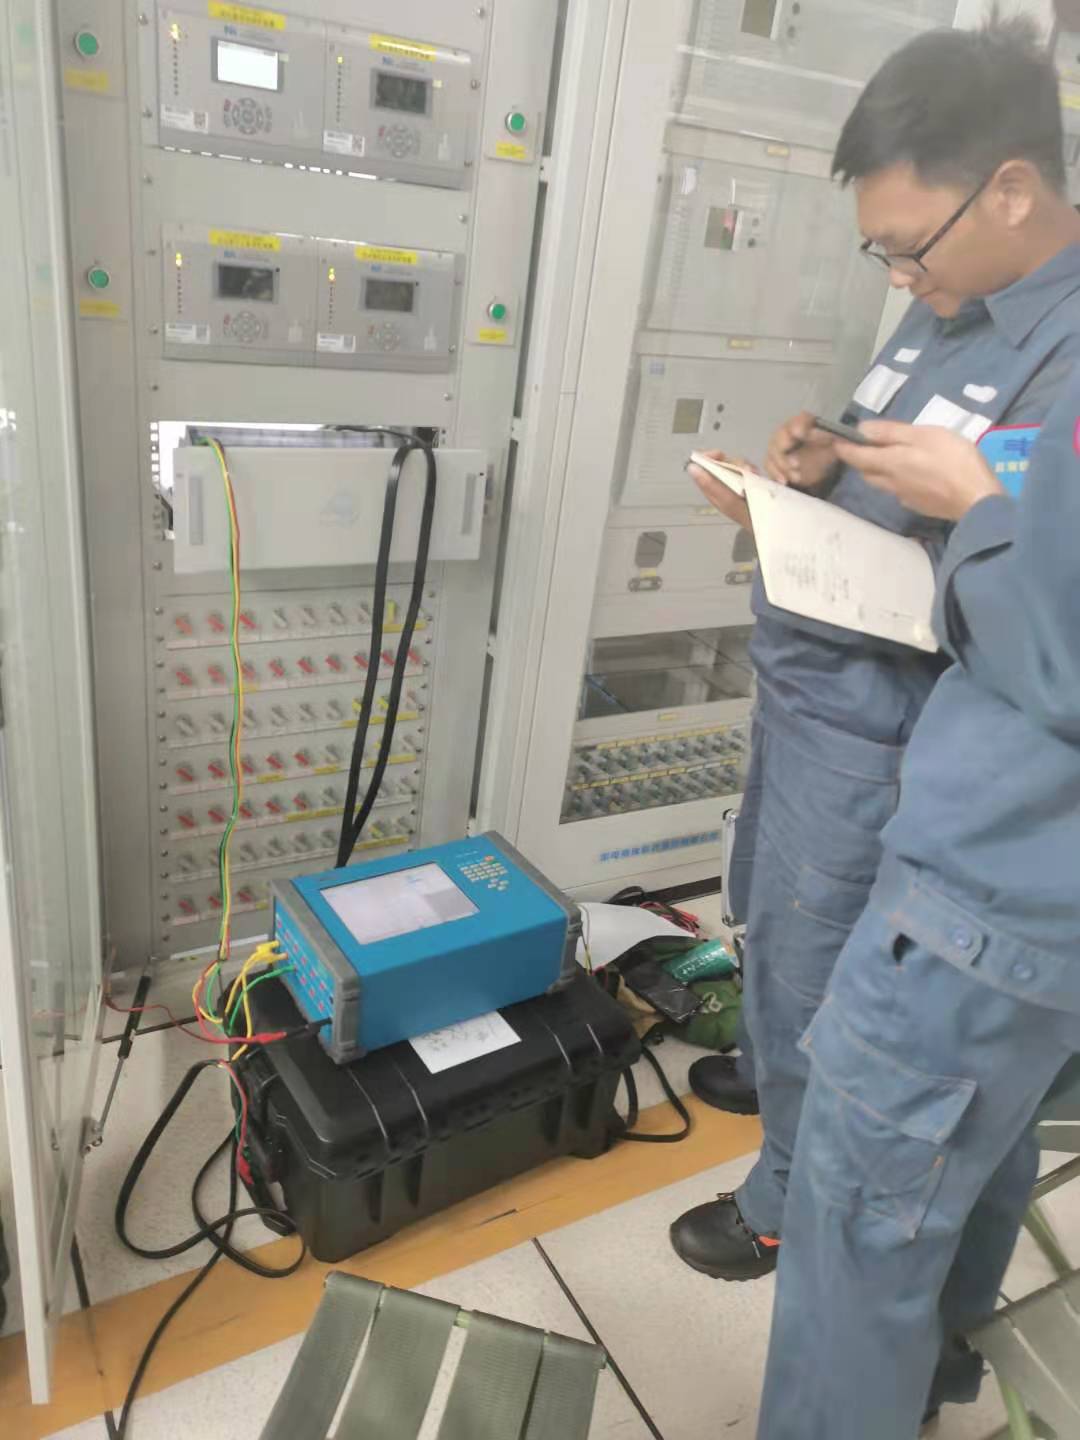 Der KF86 wurde als einziges Test- und Inbetriebnahme-Werkzeug von CSG in der Provinz Yunnan ausgewählt